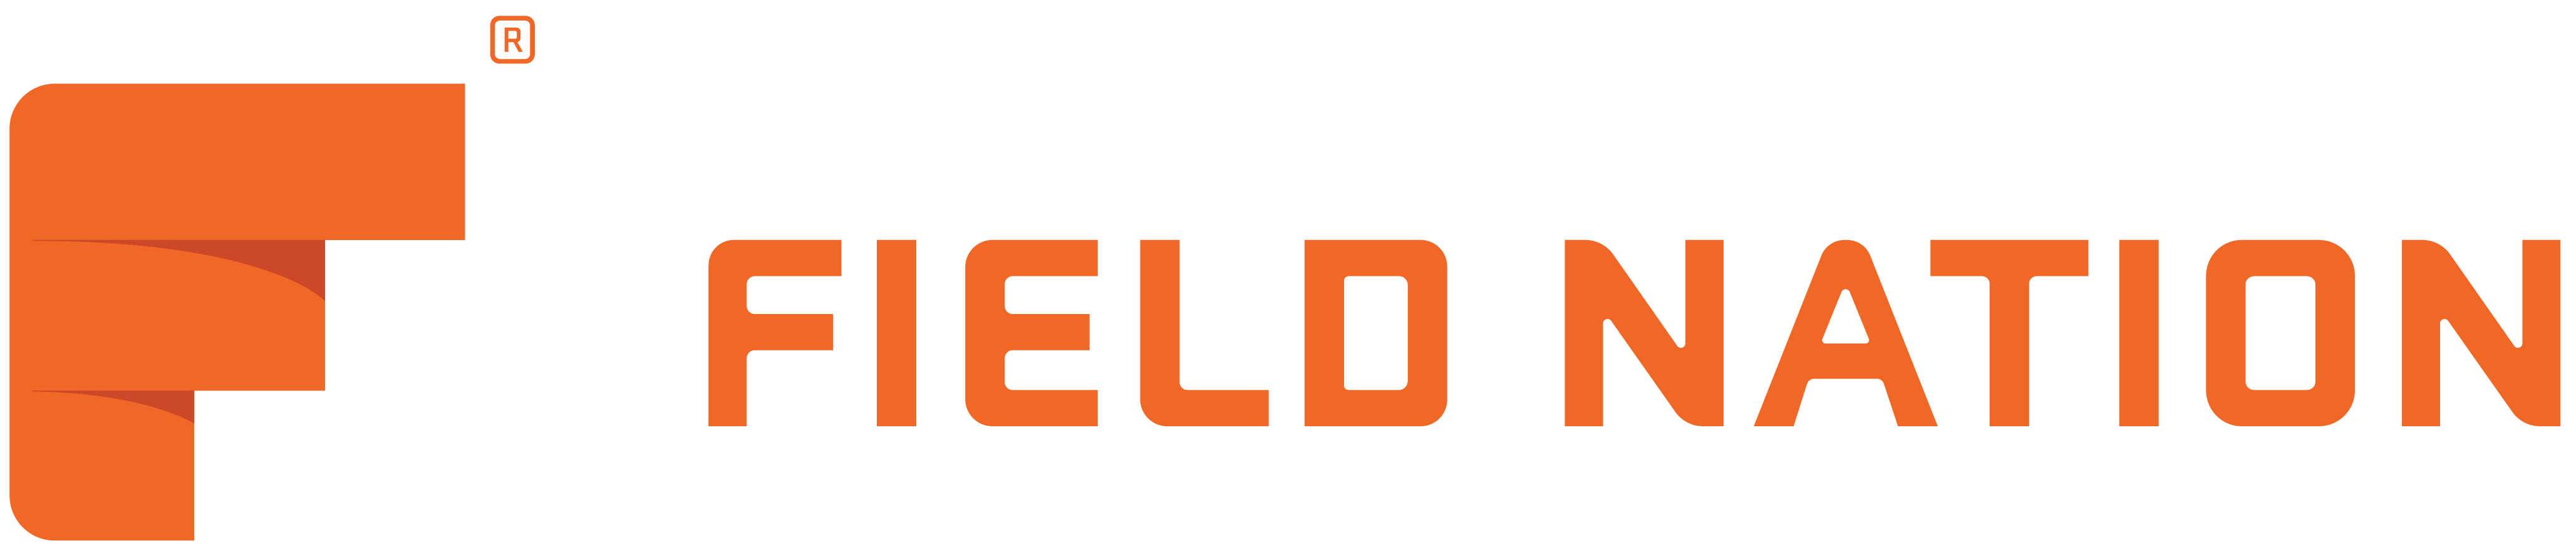 Field Nation Company Logo